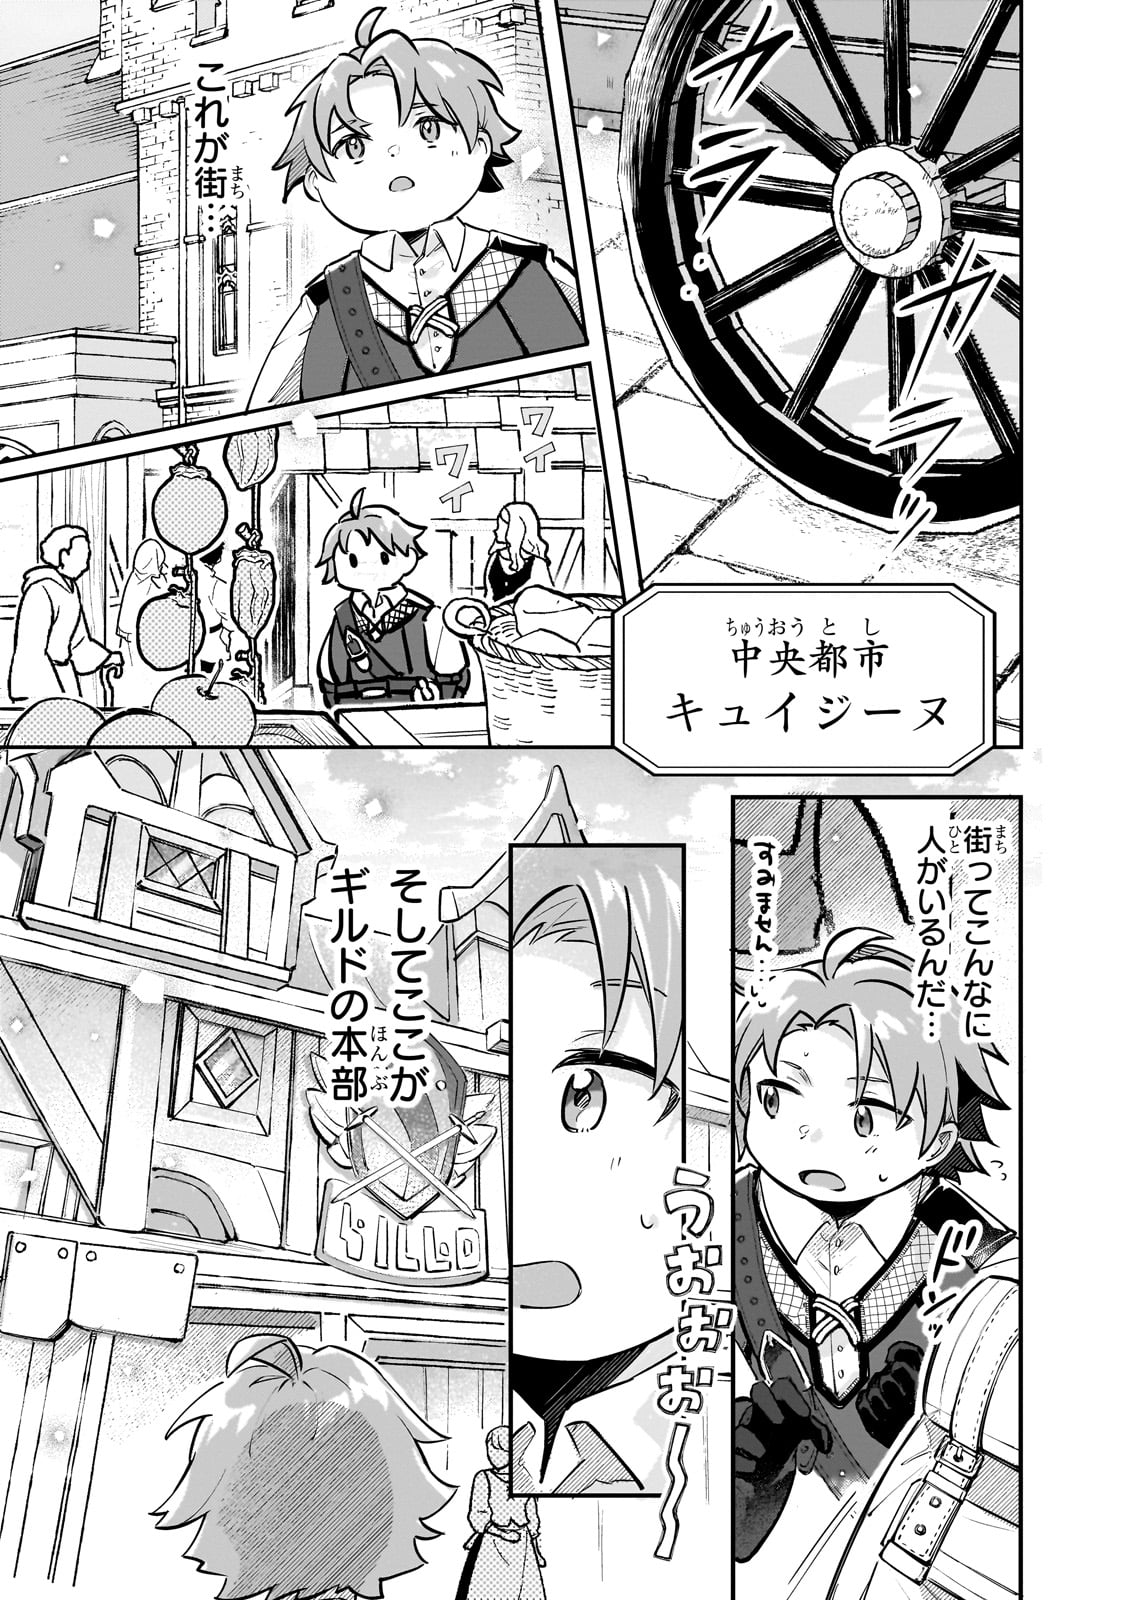 Futoccho Kizoku wa Meikyuu de Waltz wo Odoru - Chapter 1 - Page 20